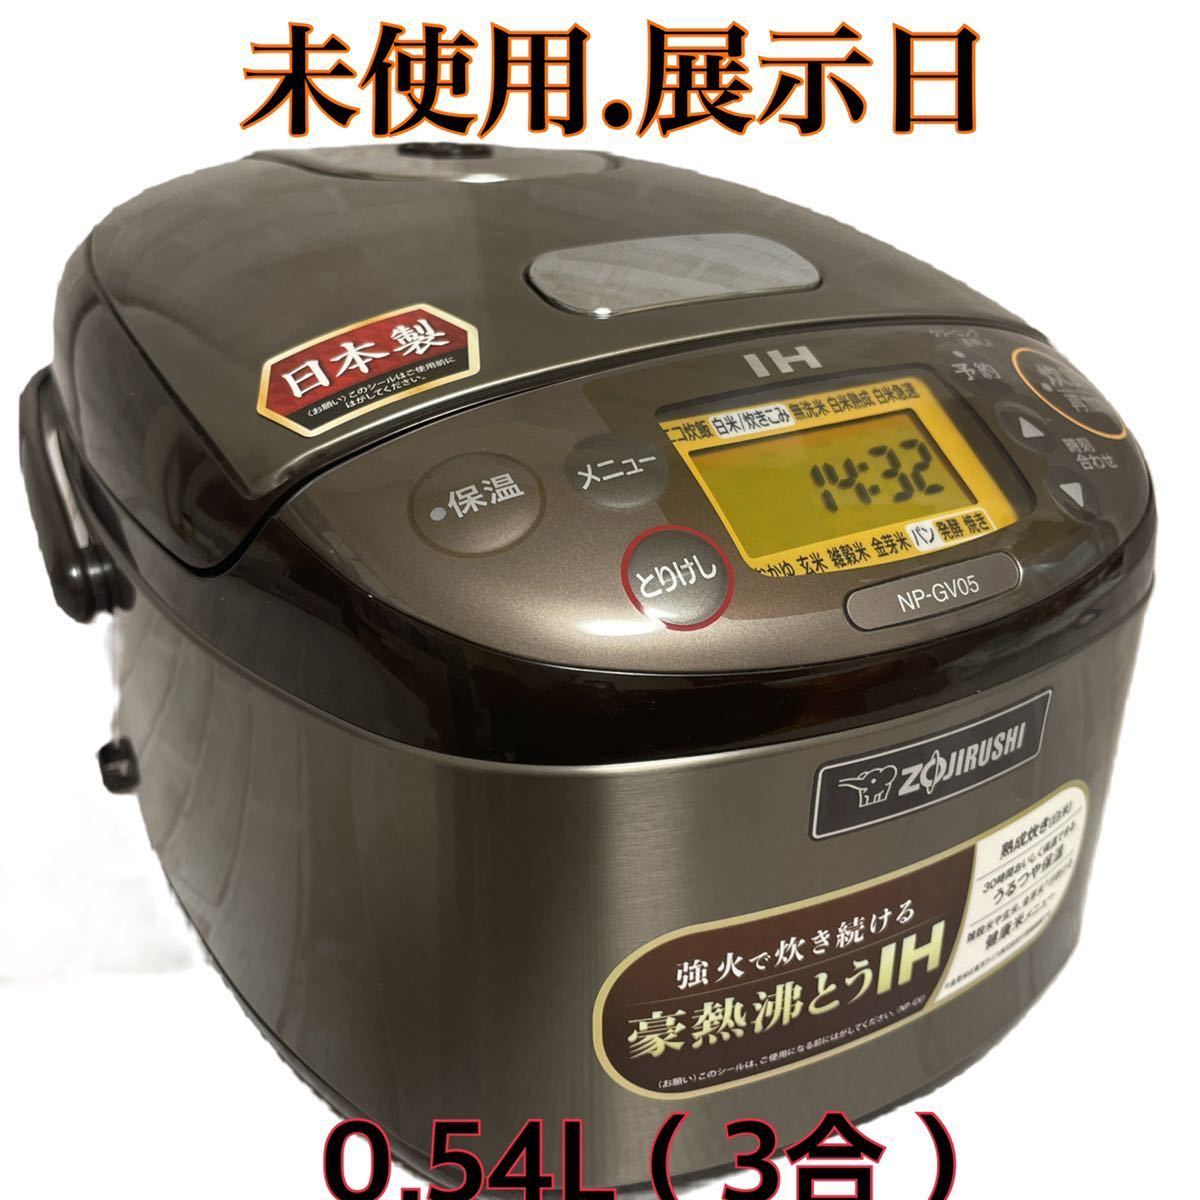 正規品最新作 NP-GV05-XT 象印 3合炊き IH炊飯ジャー 炊飯器 極め炊き